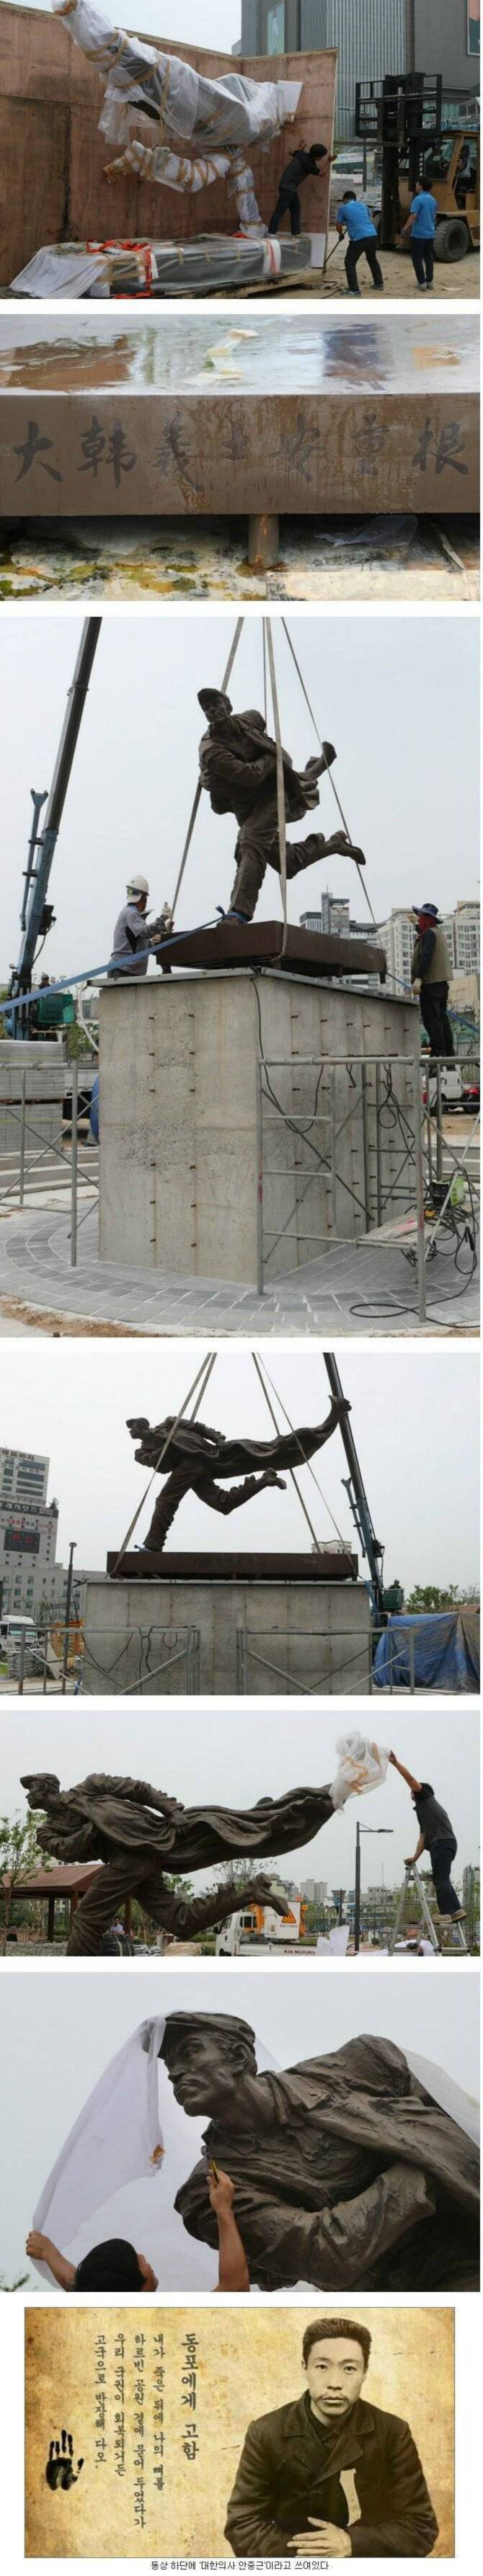 중국에서 한국에 기부한 동상.jpg | 인스티즈